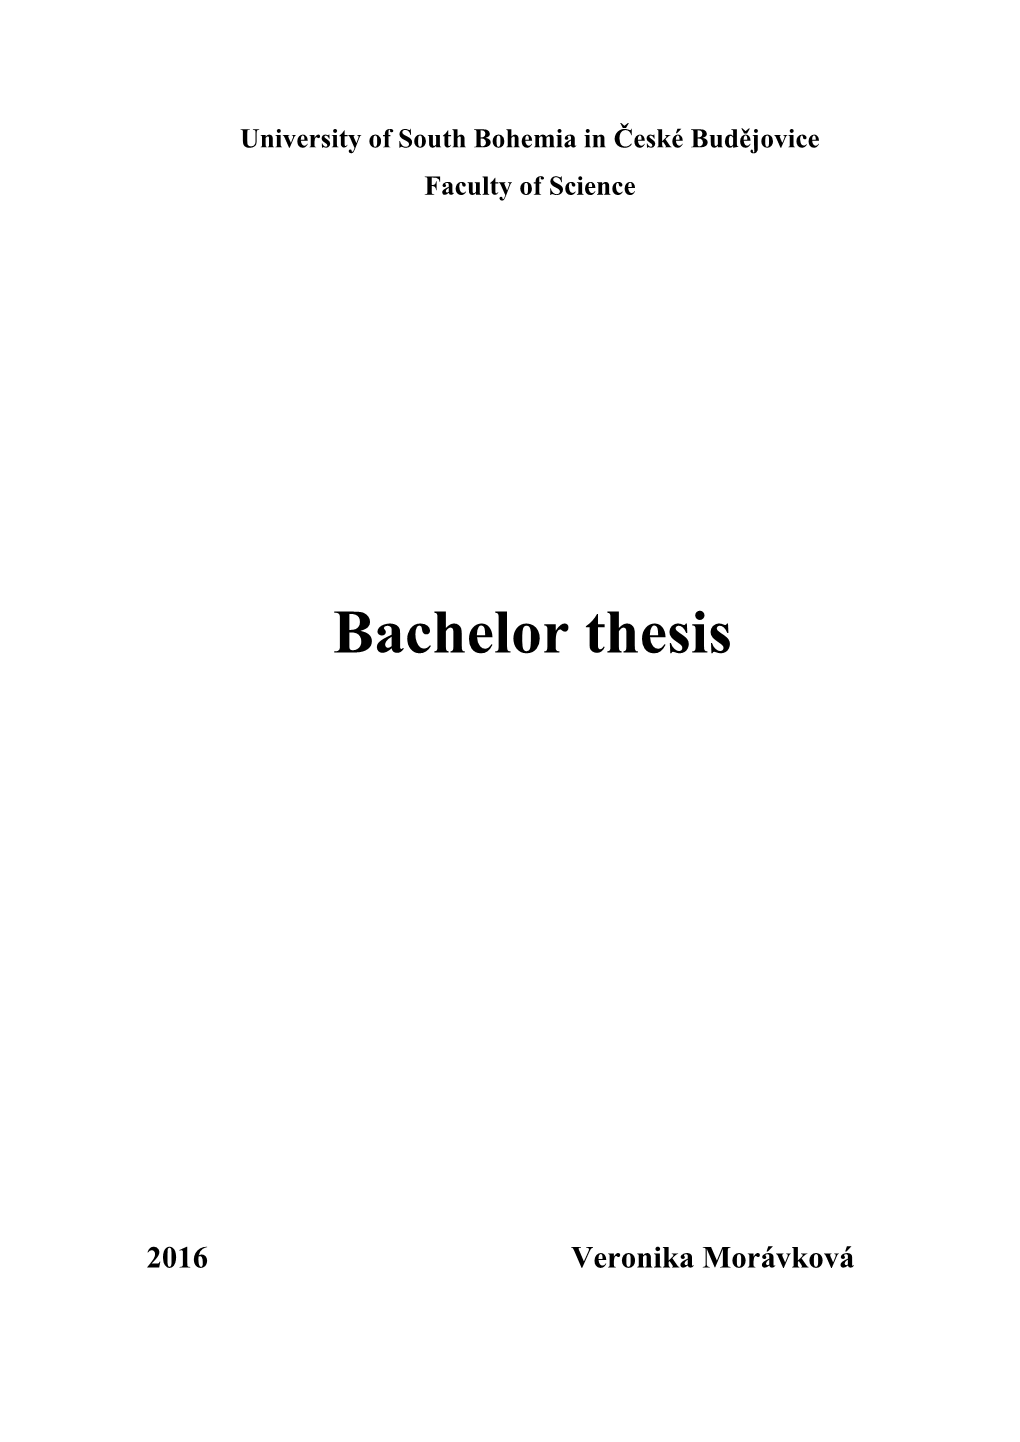 Bachelor Thesis